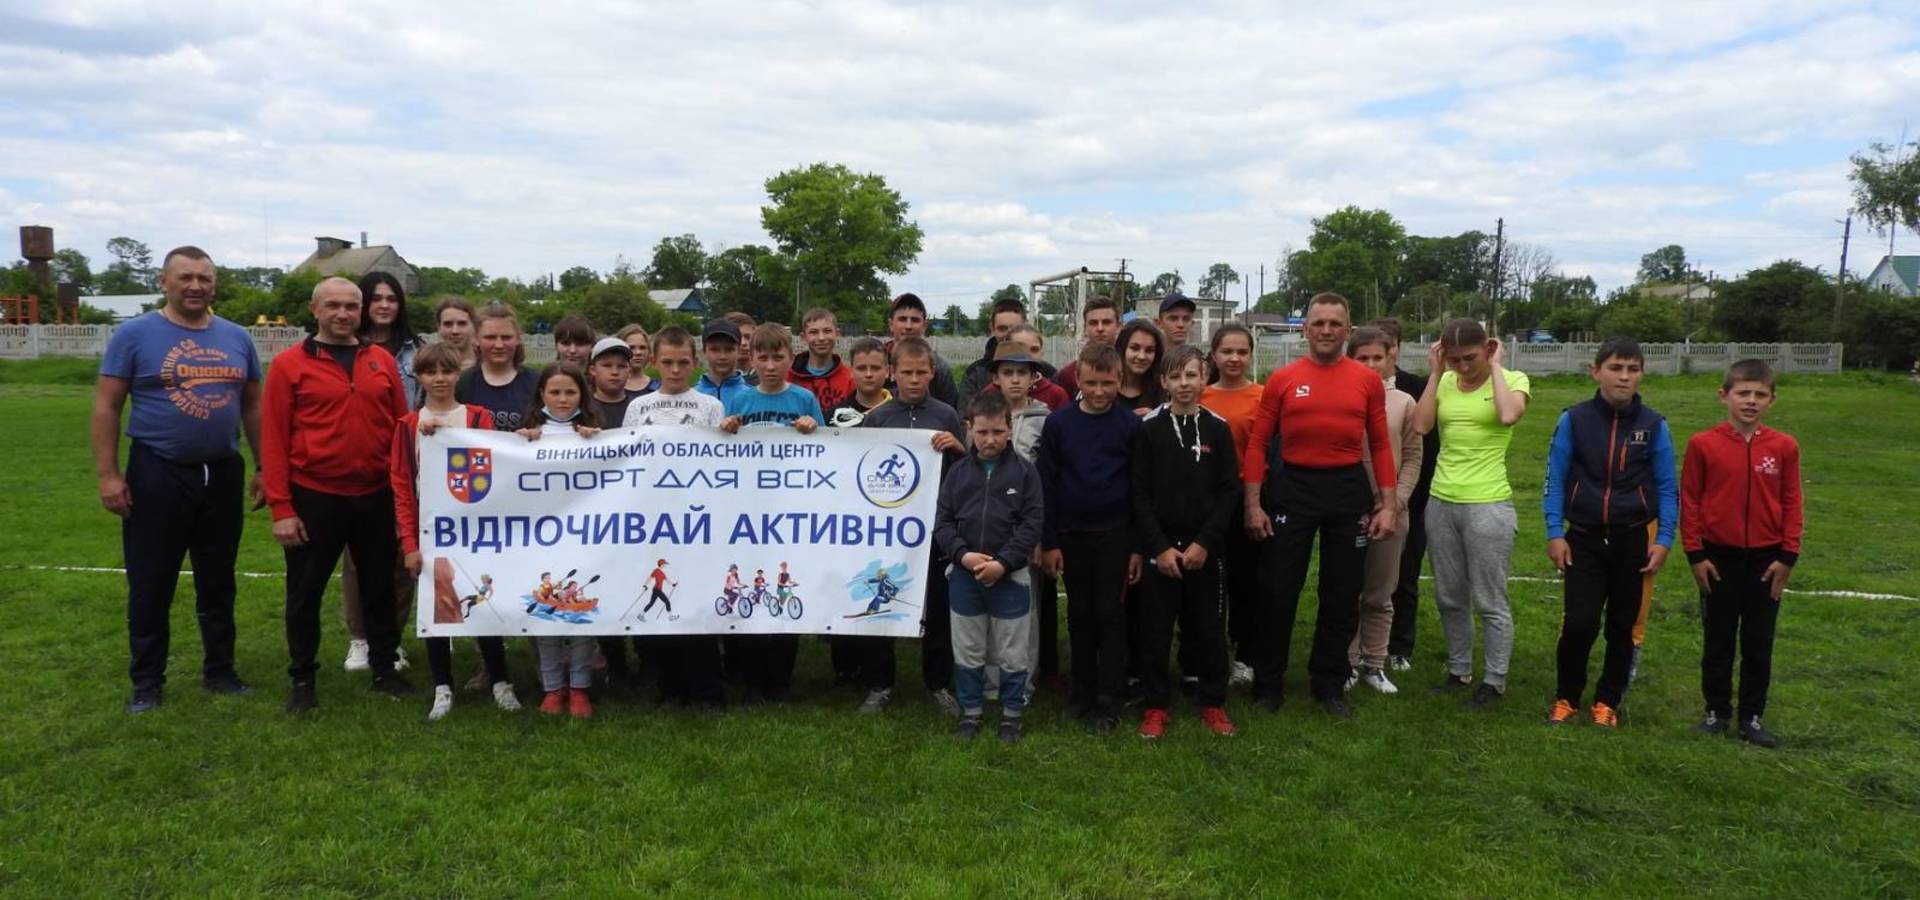 «Здорові діти – здорова нація» - спортивні ігри в Качанівській школі Війтівецької громади